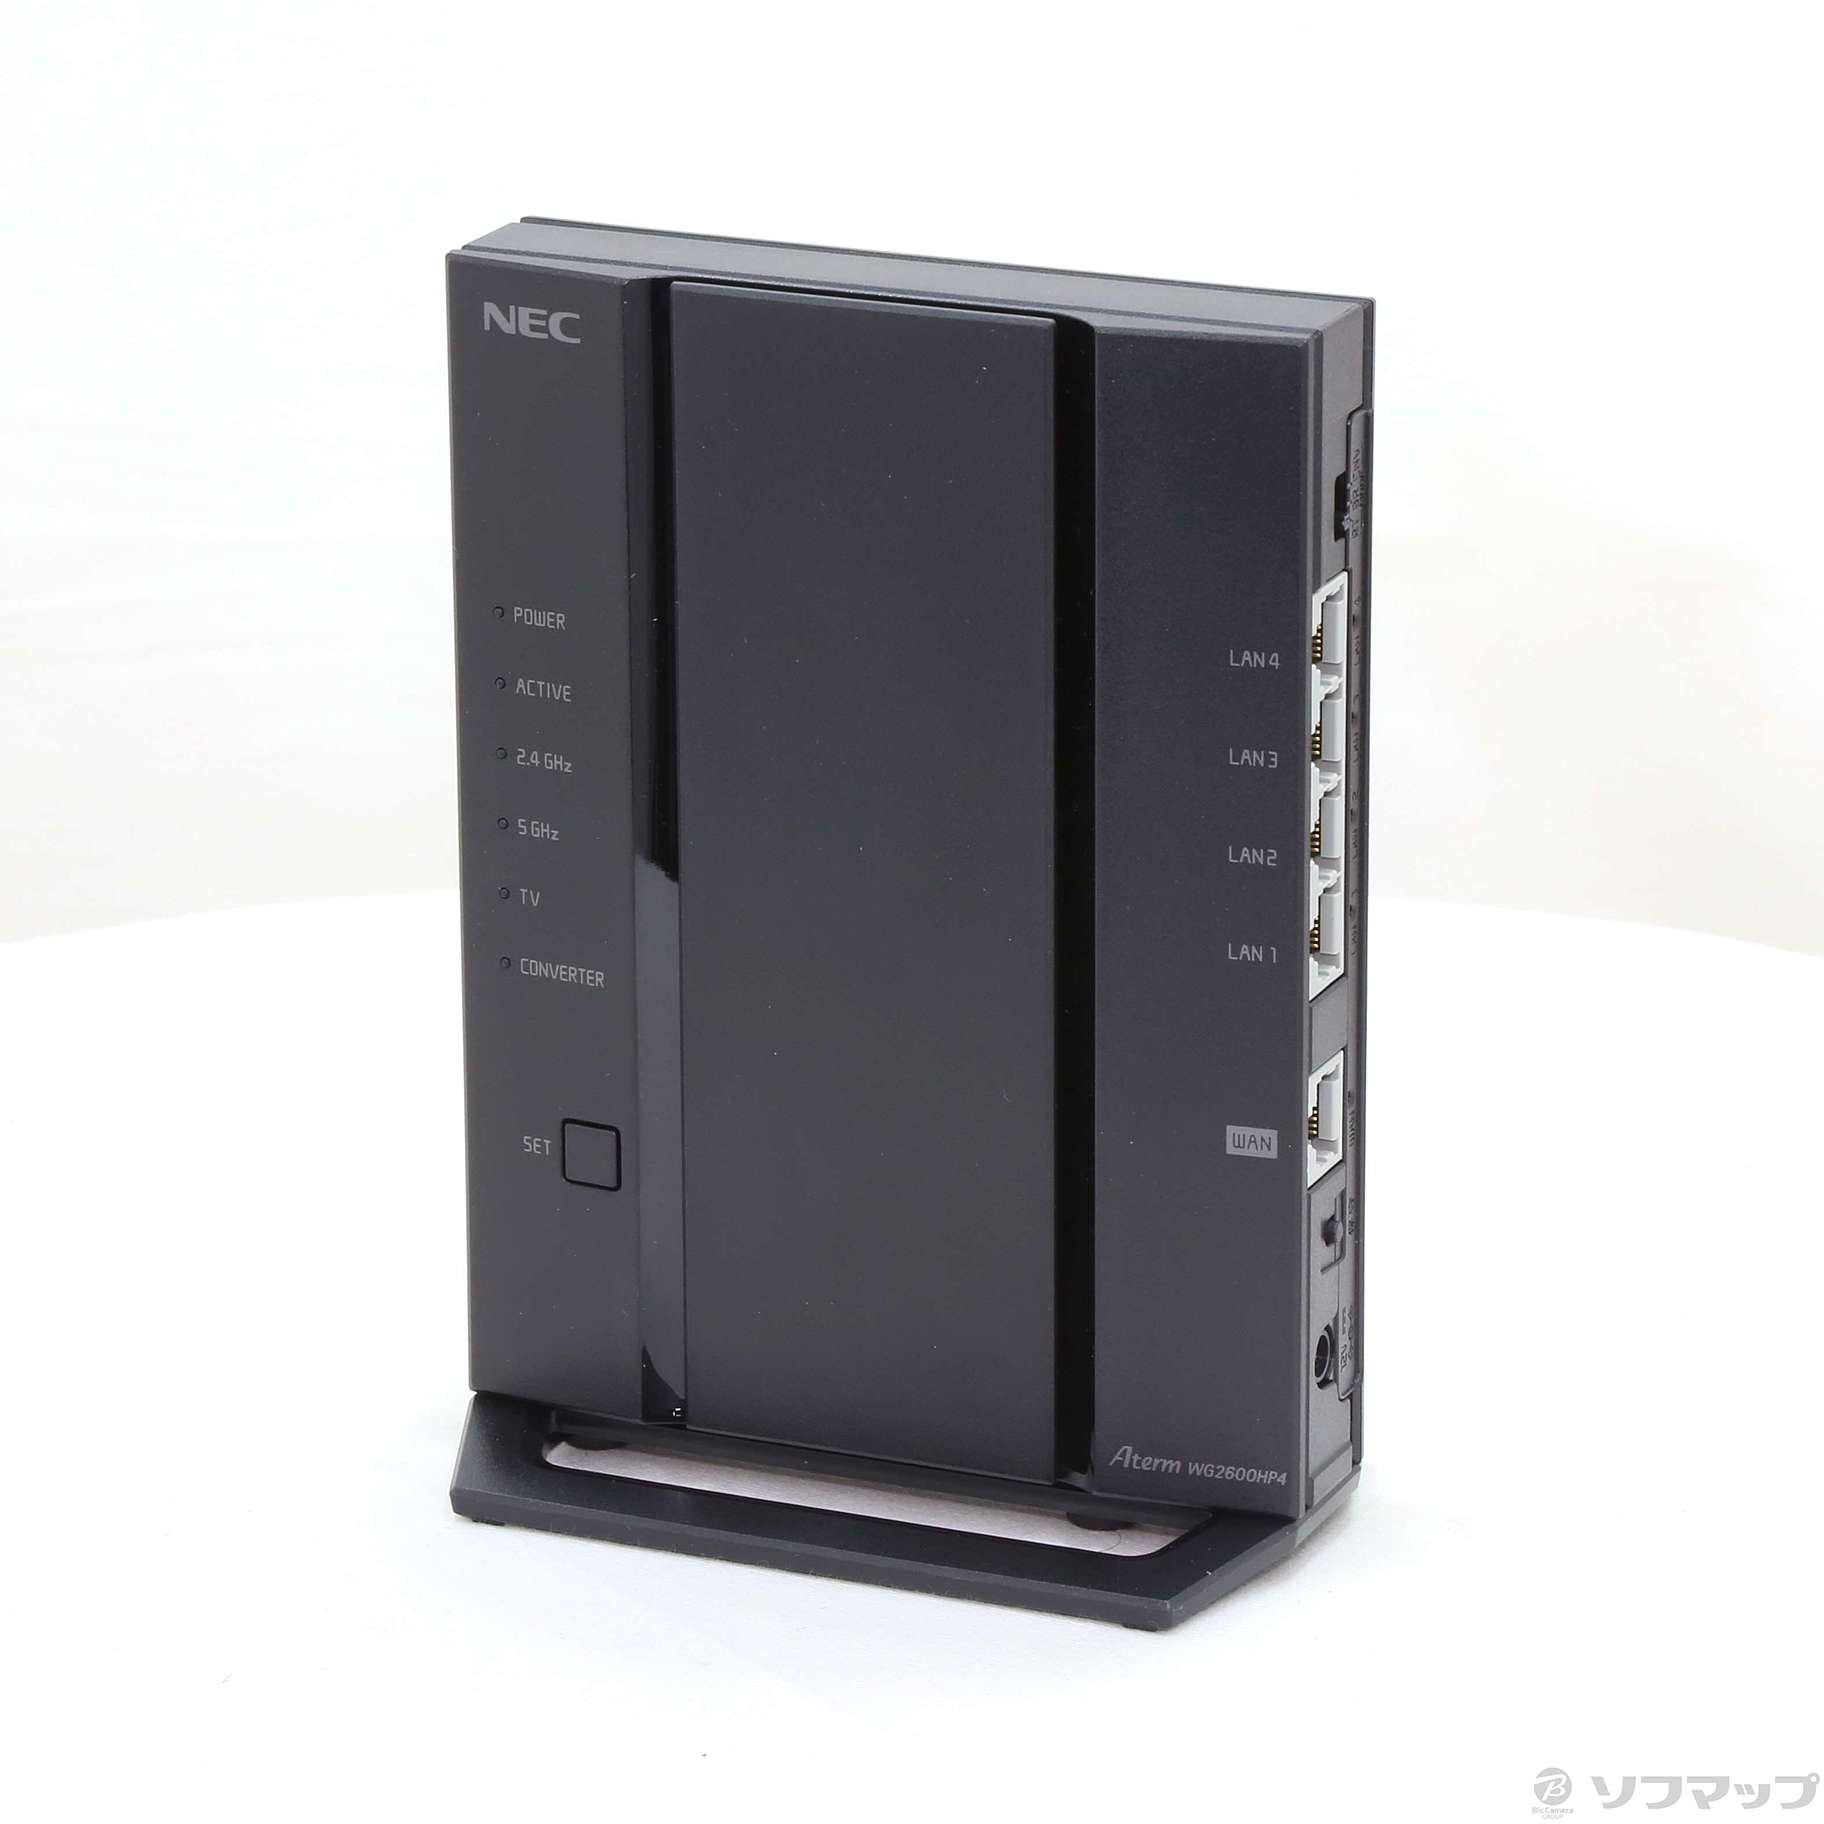 人気第1位 NEC Aterm WG2600HP4 ⑤⑥2台 - PC/タブレット